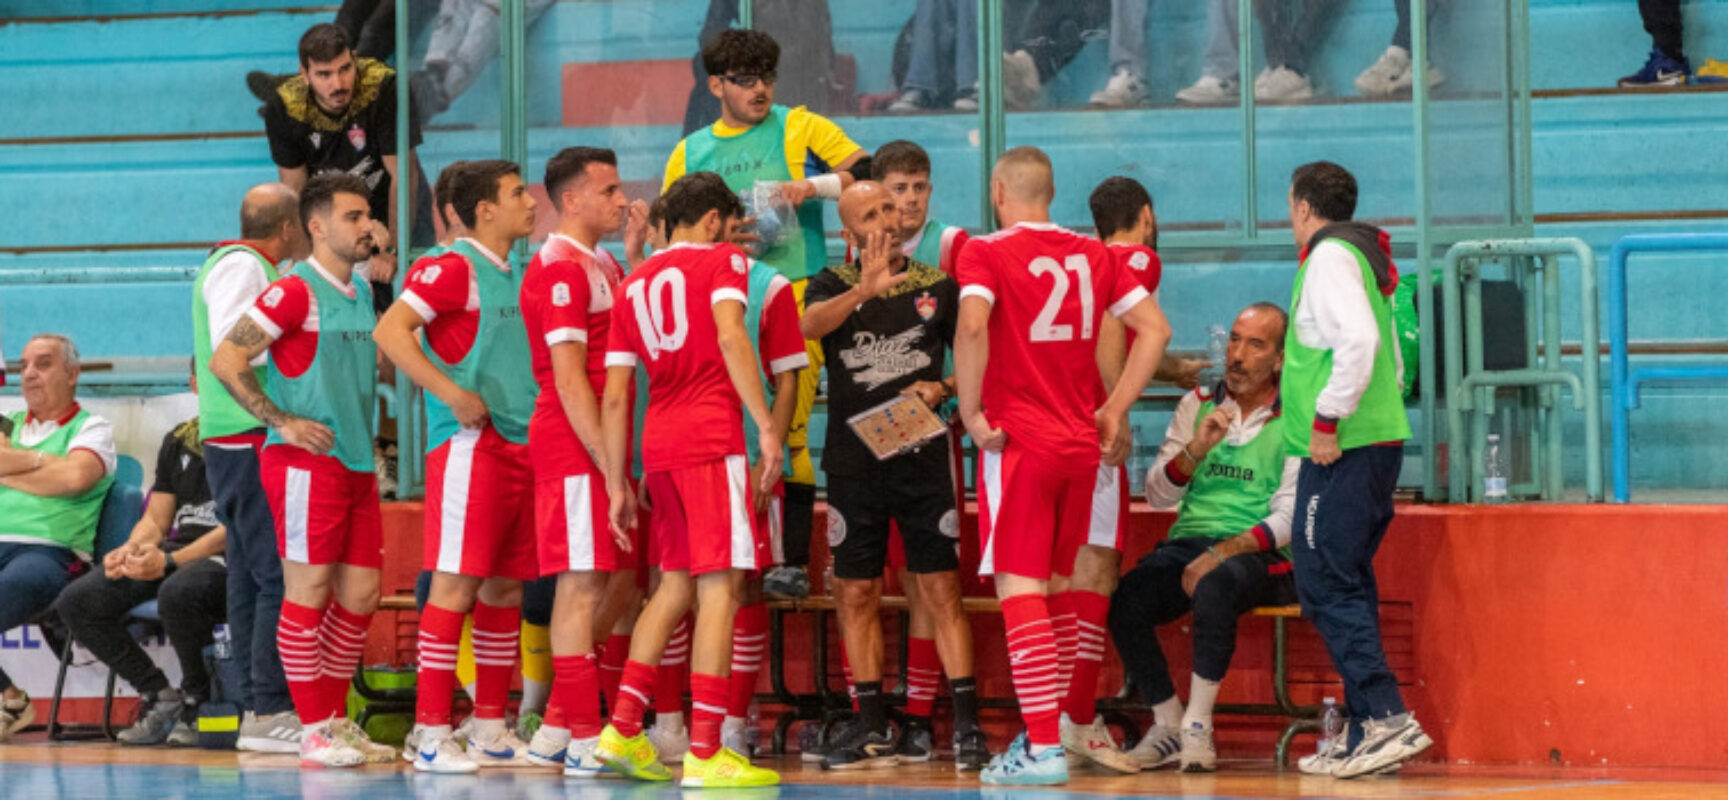 Futsal: Diaz cerca riscatto in Calabria, Cinco ospita il Ruvo, Nettuno in trasferta